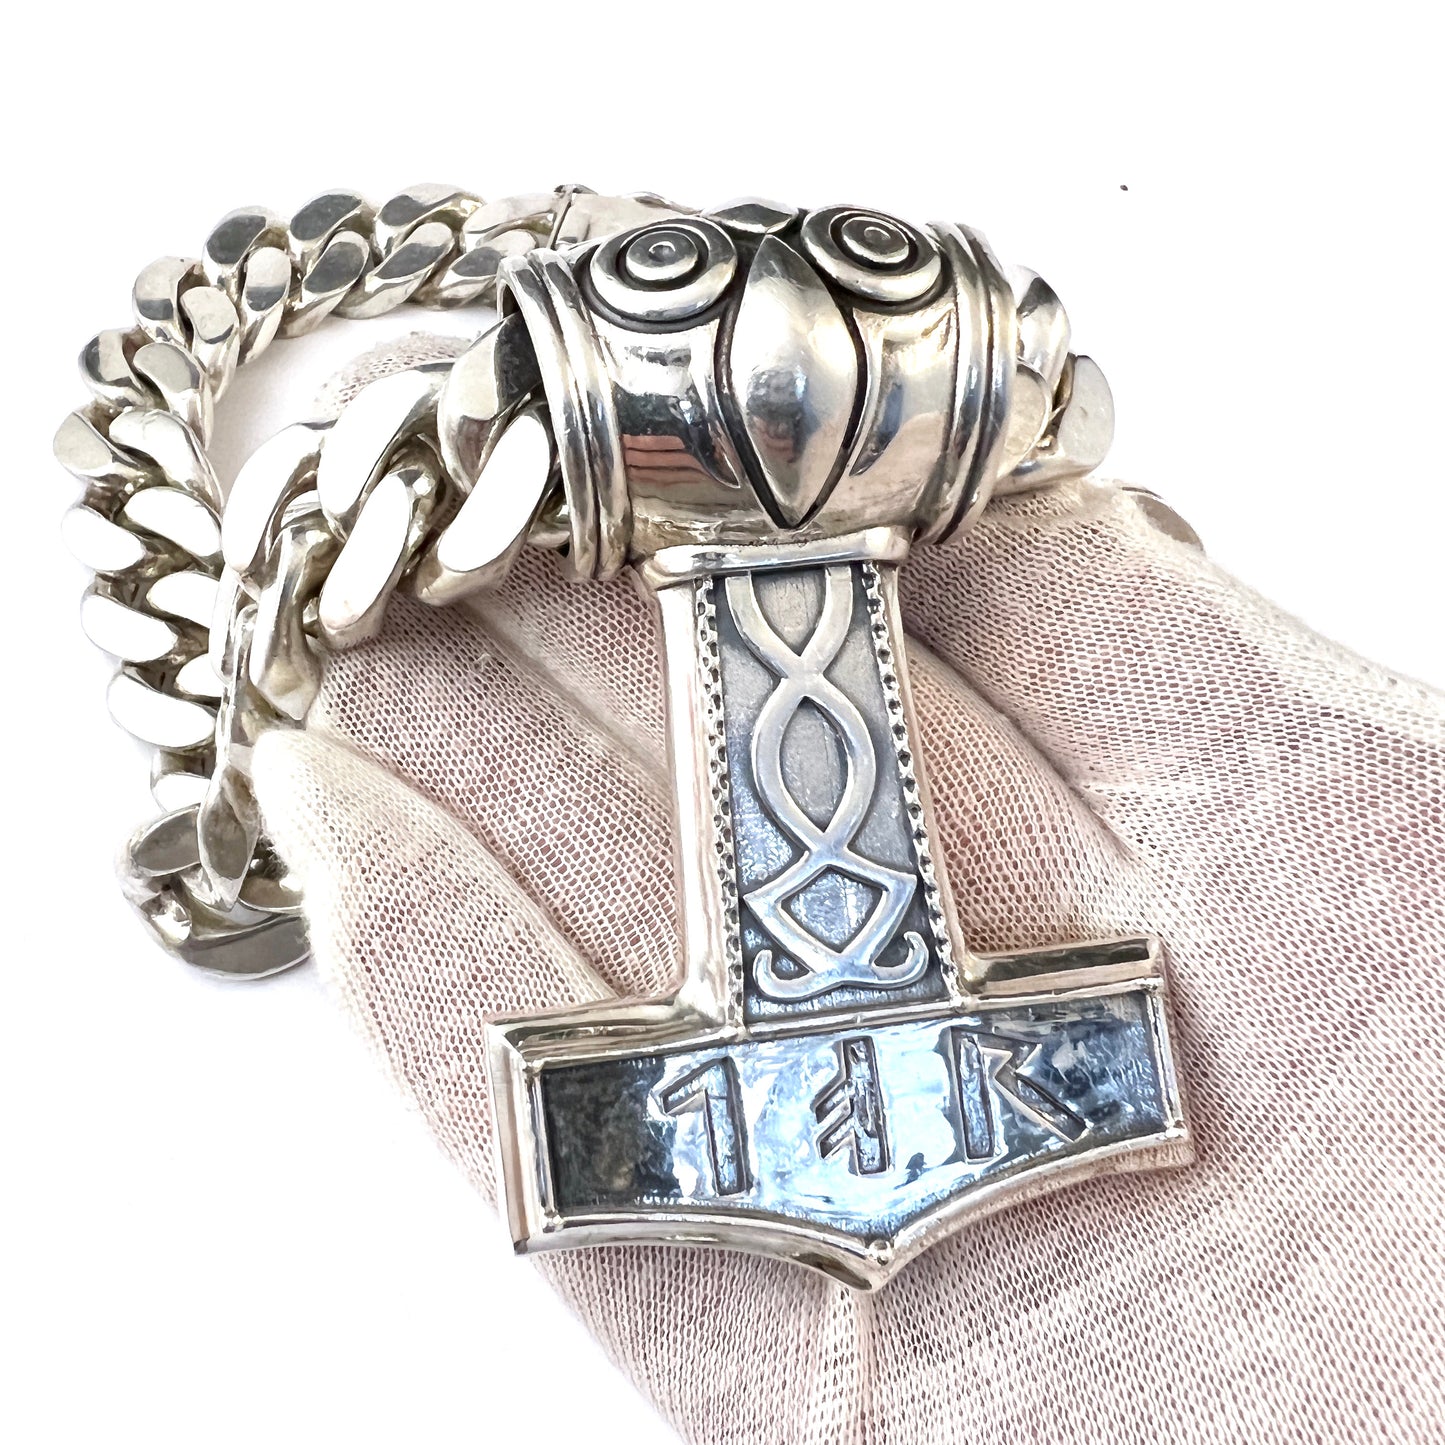 Massive 21oz / 0.6kg Sterling Silver Vintage Viking Copy Thor's Hammer Pendant Necklace.